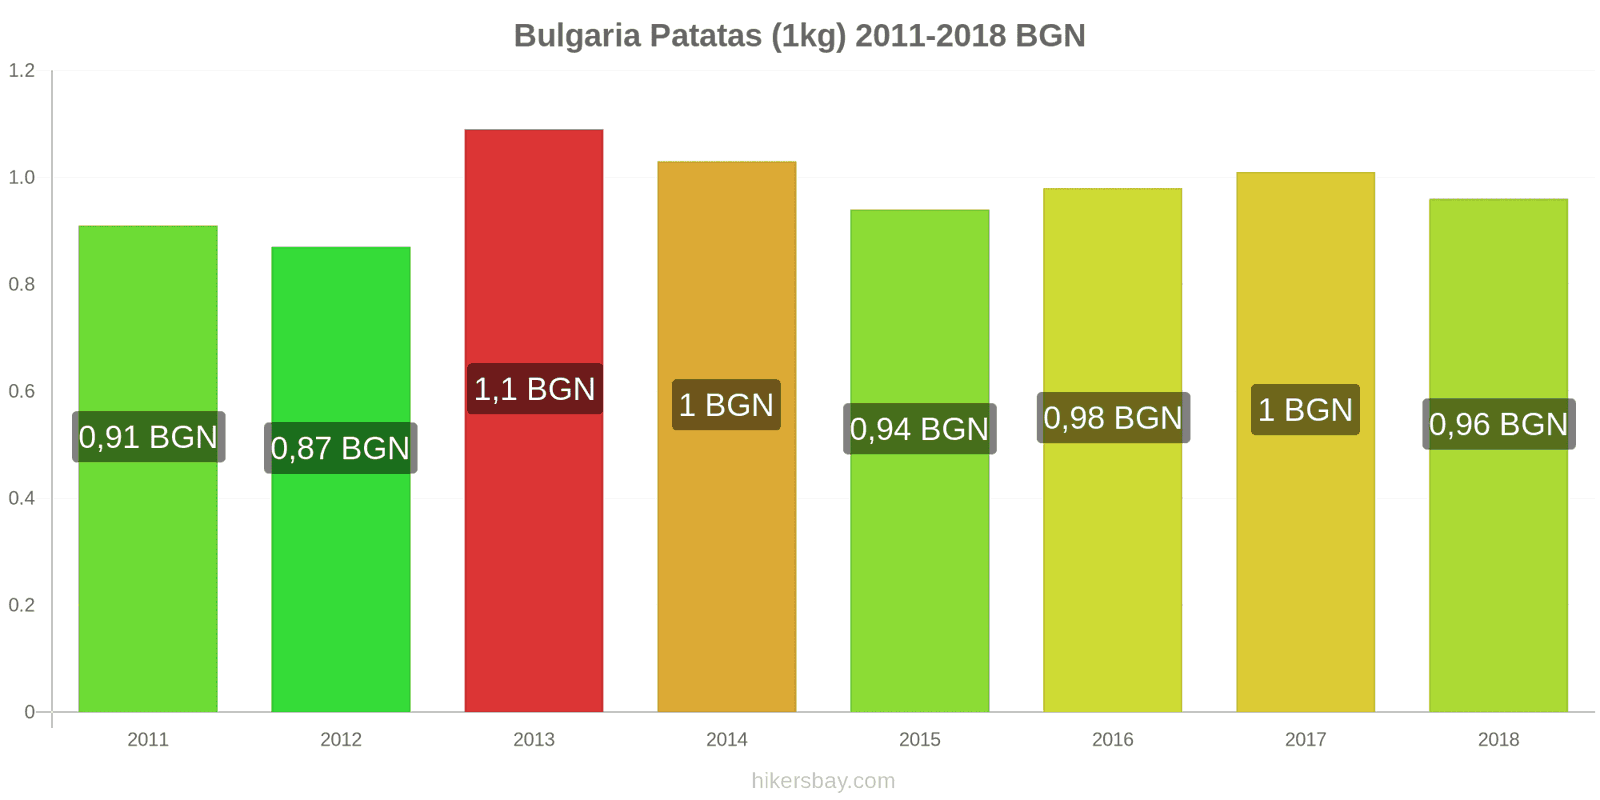 Bulgaria cambios de precios Patatas (1kg) hikersbay.com